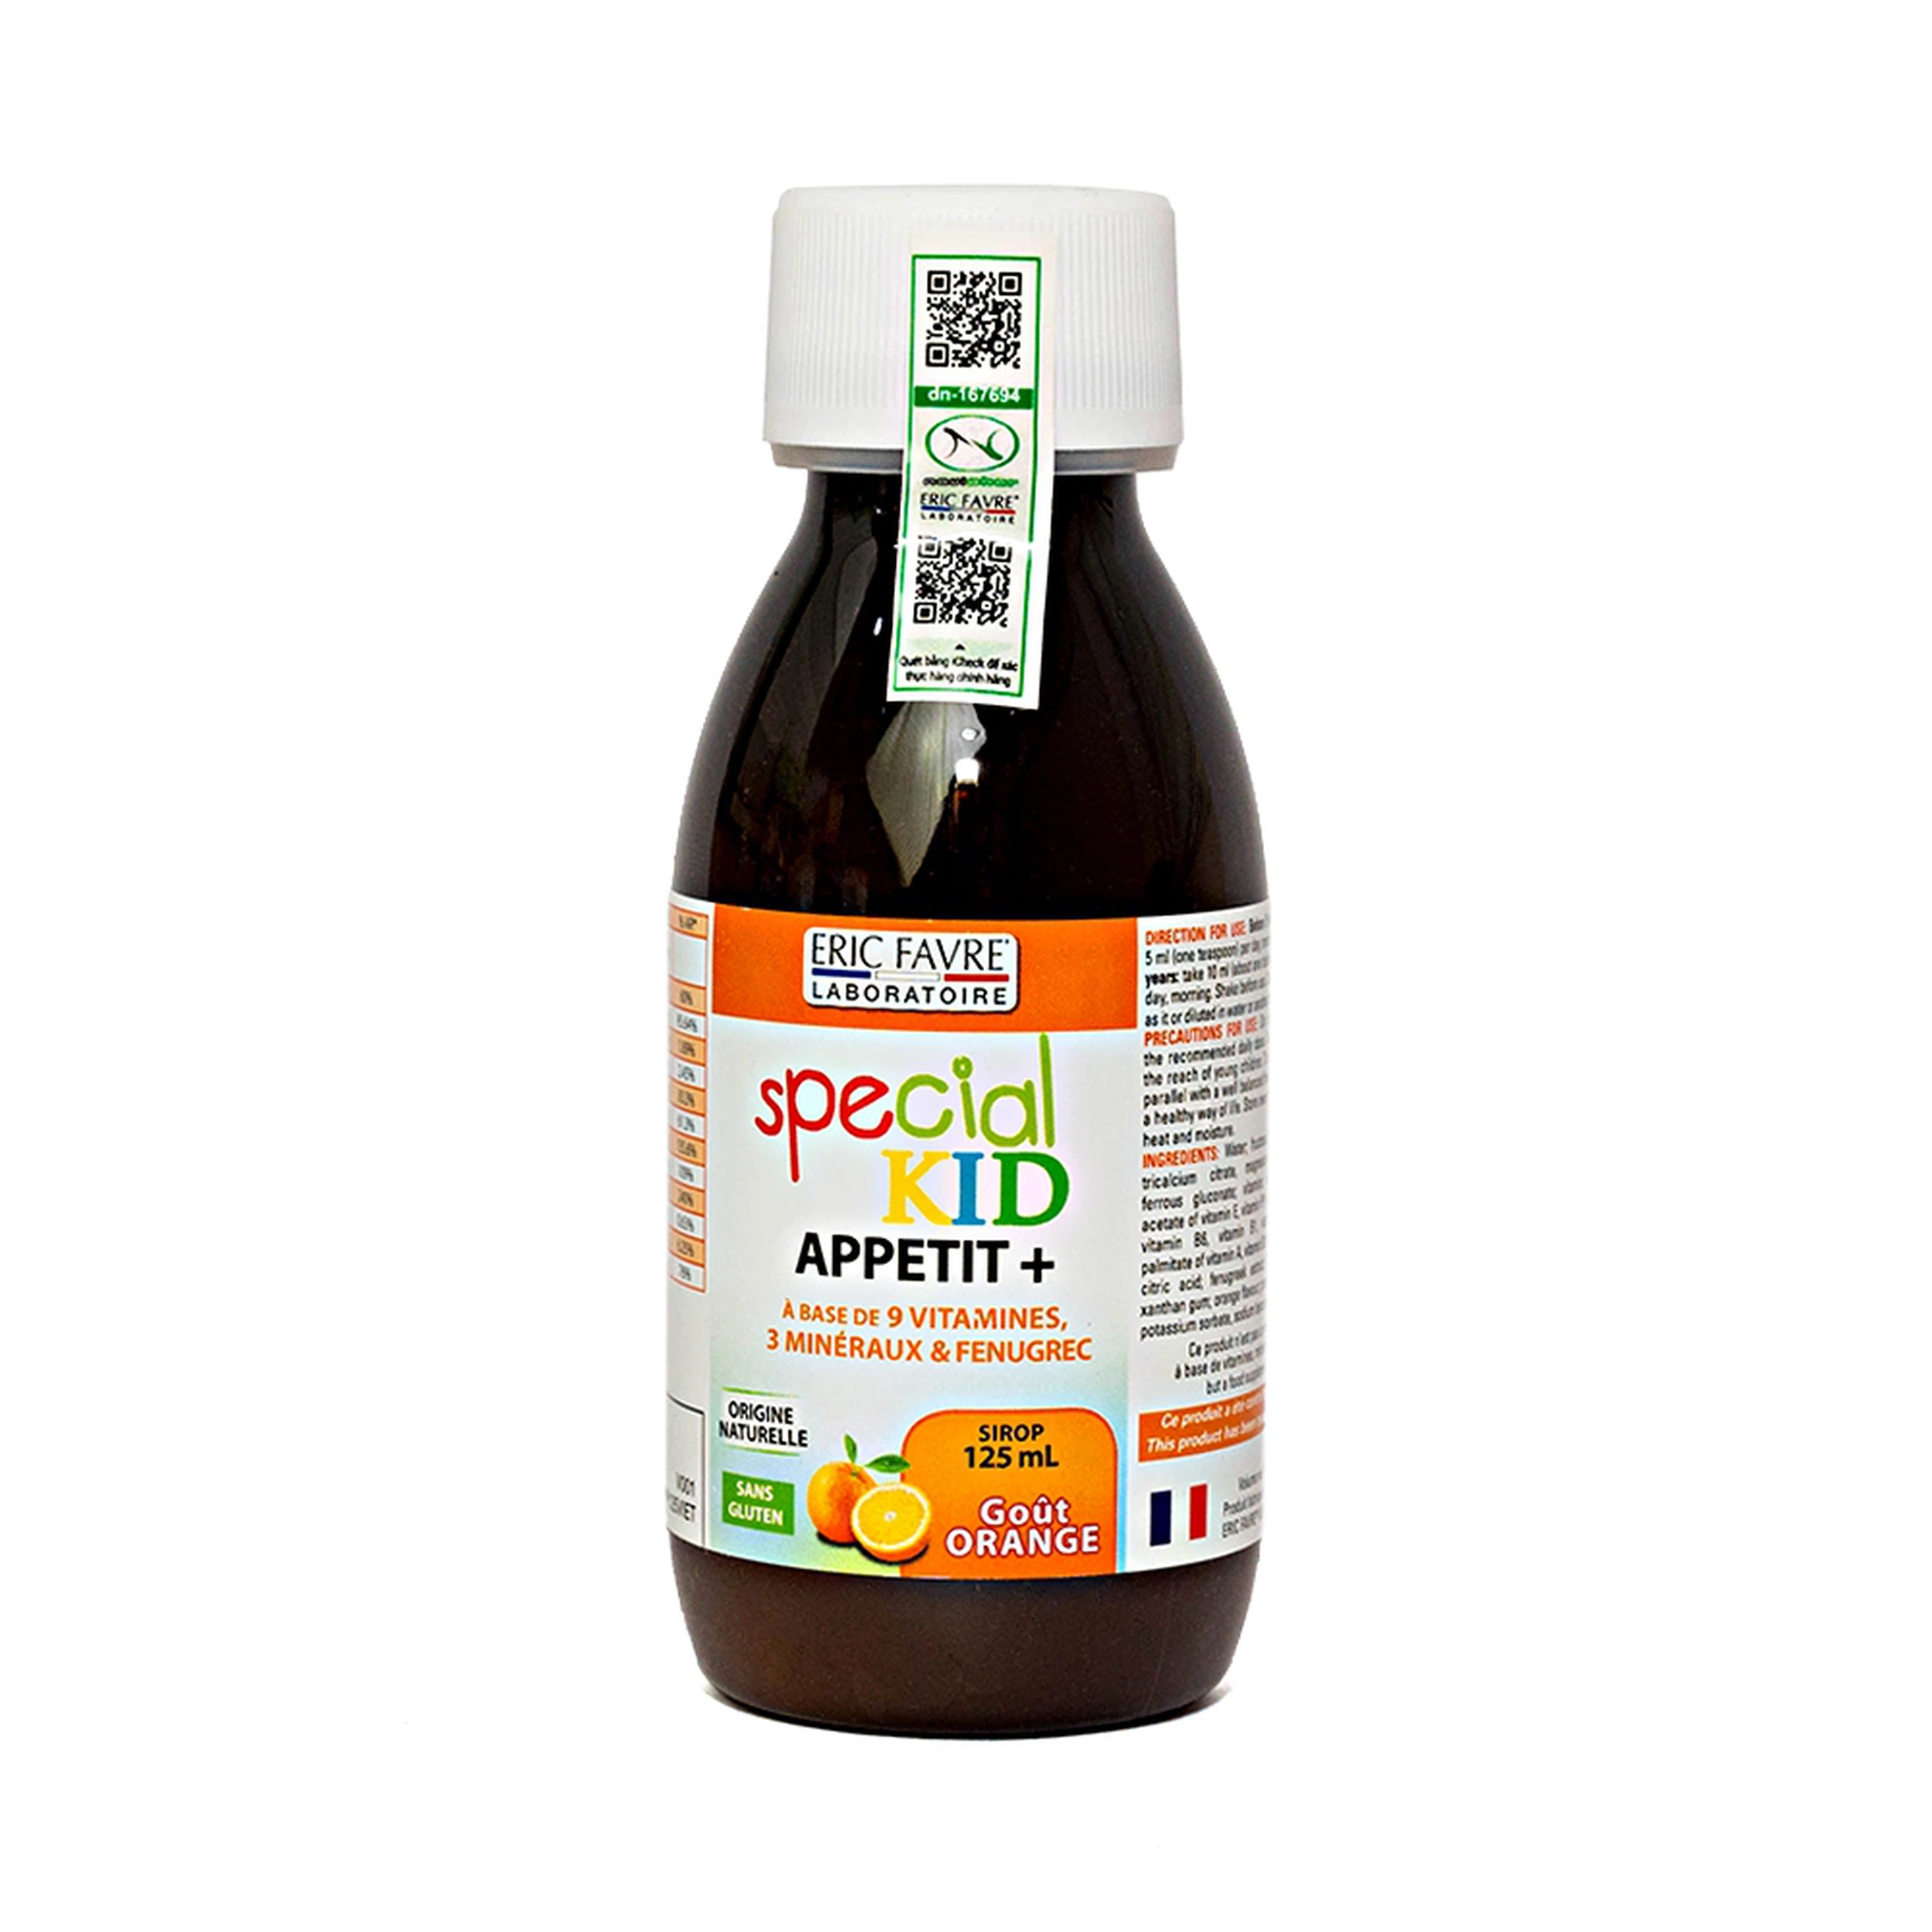 Siro Special Kid Appeti+ bổ sung các vitamin và khoáng chất, hỗ trợ tiêu hóa tốt (125ml)